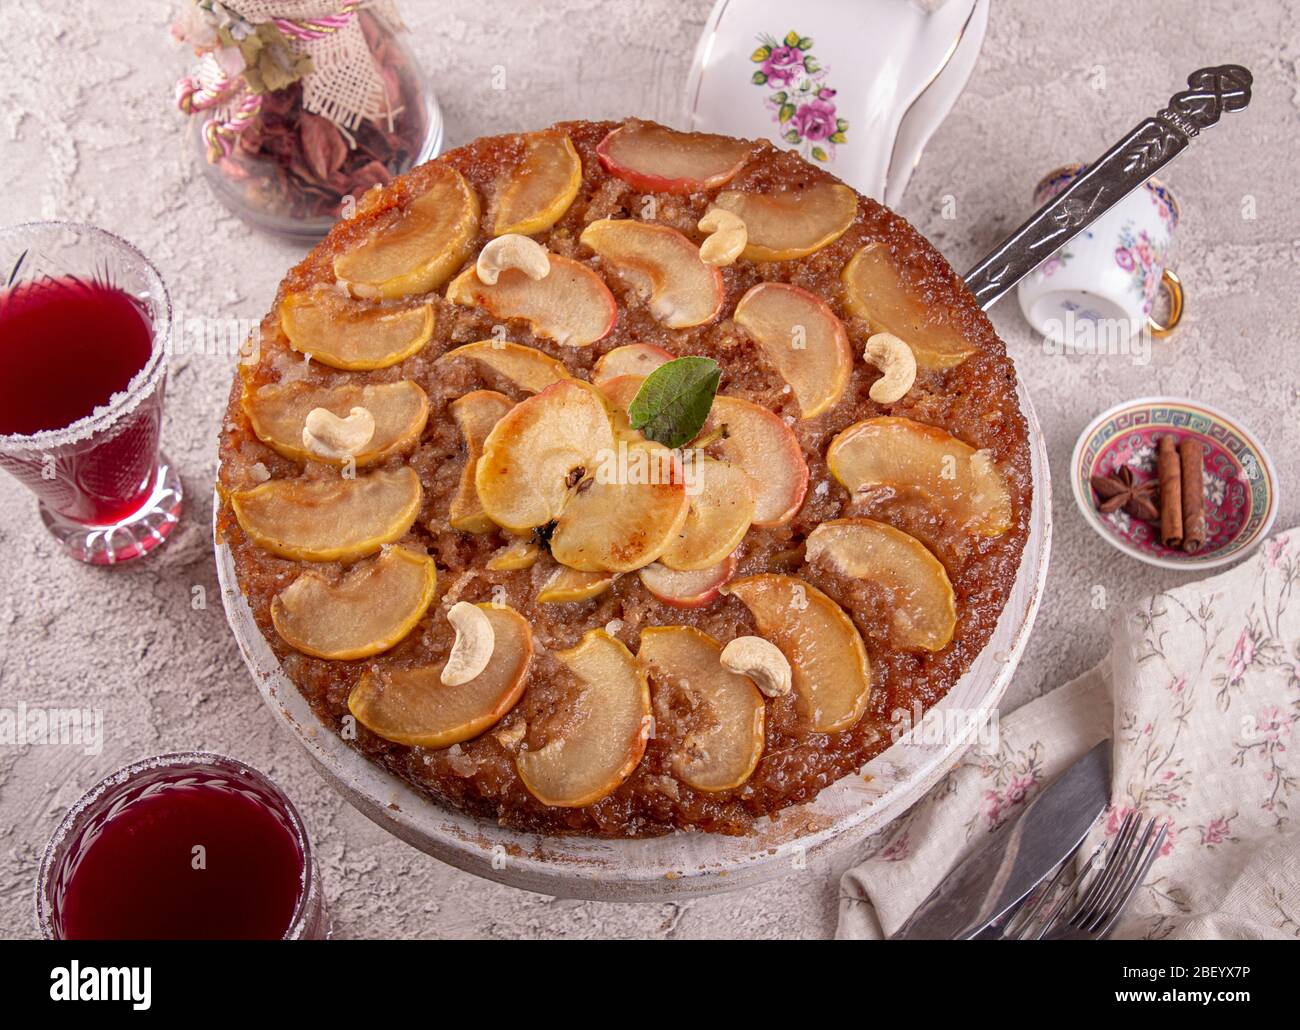 Französische süße pie Tarte tatin Apfelkuchen verkehrt herum auf grauem ...